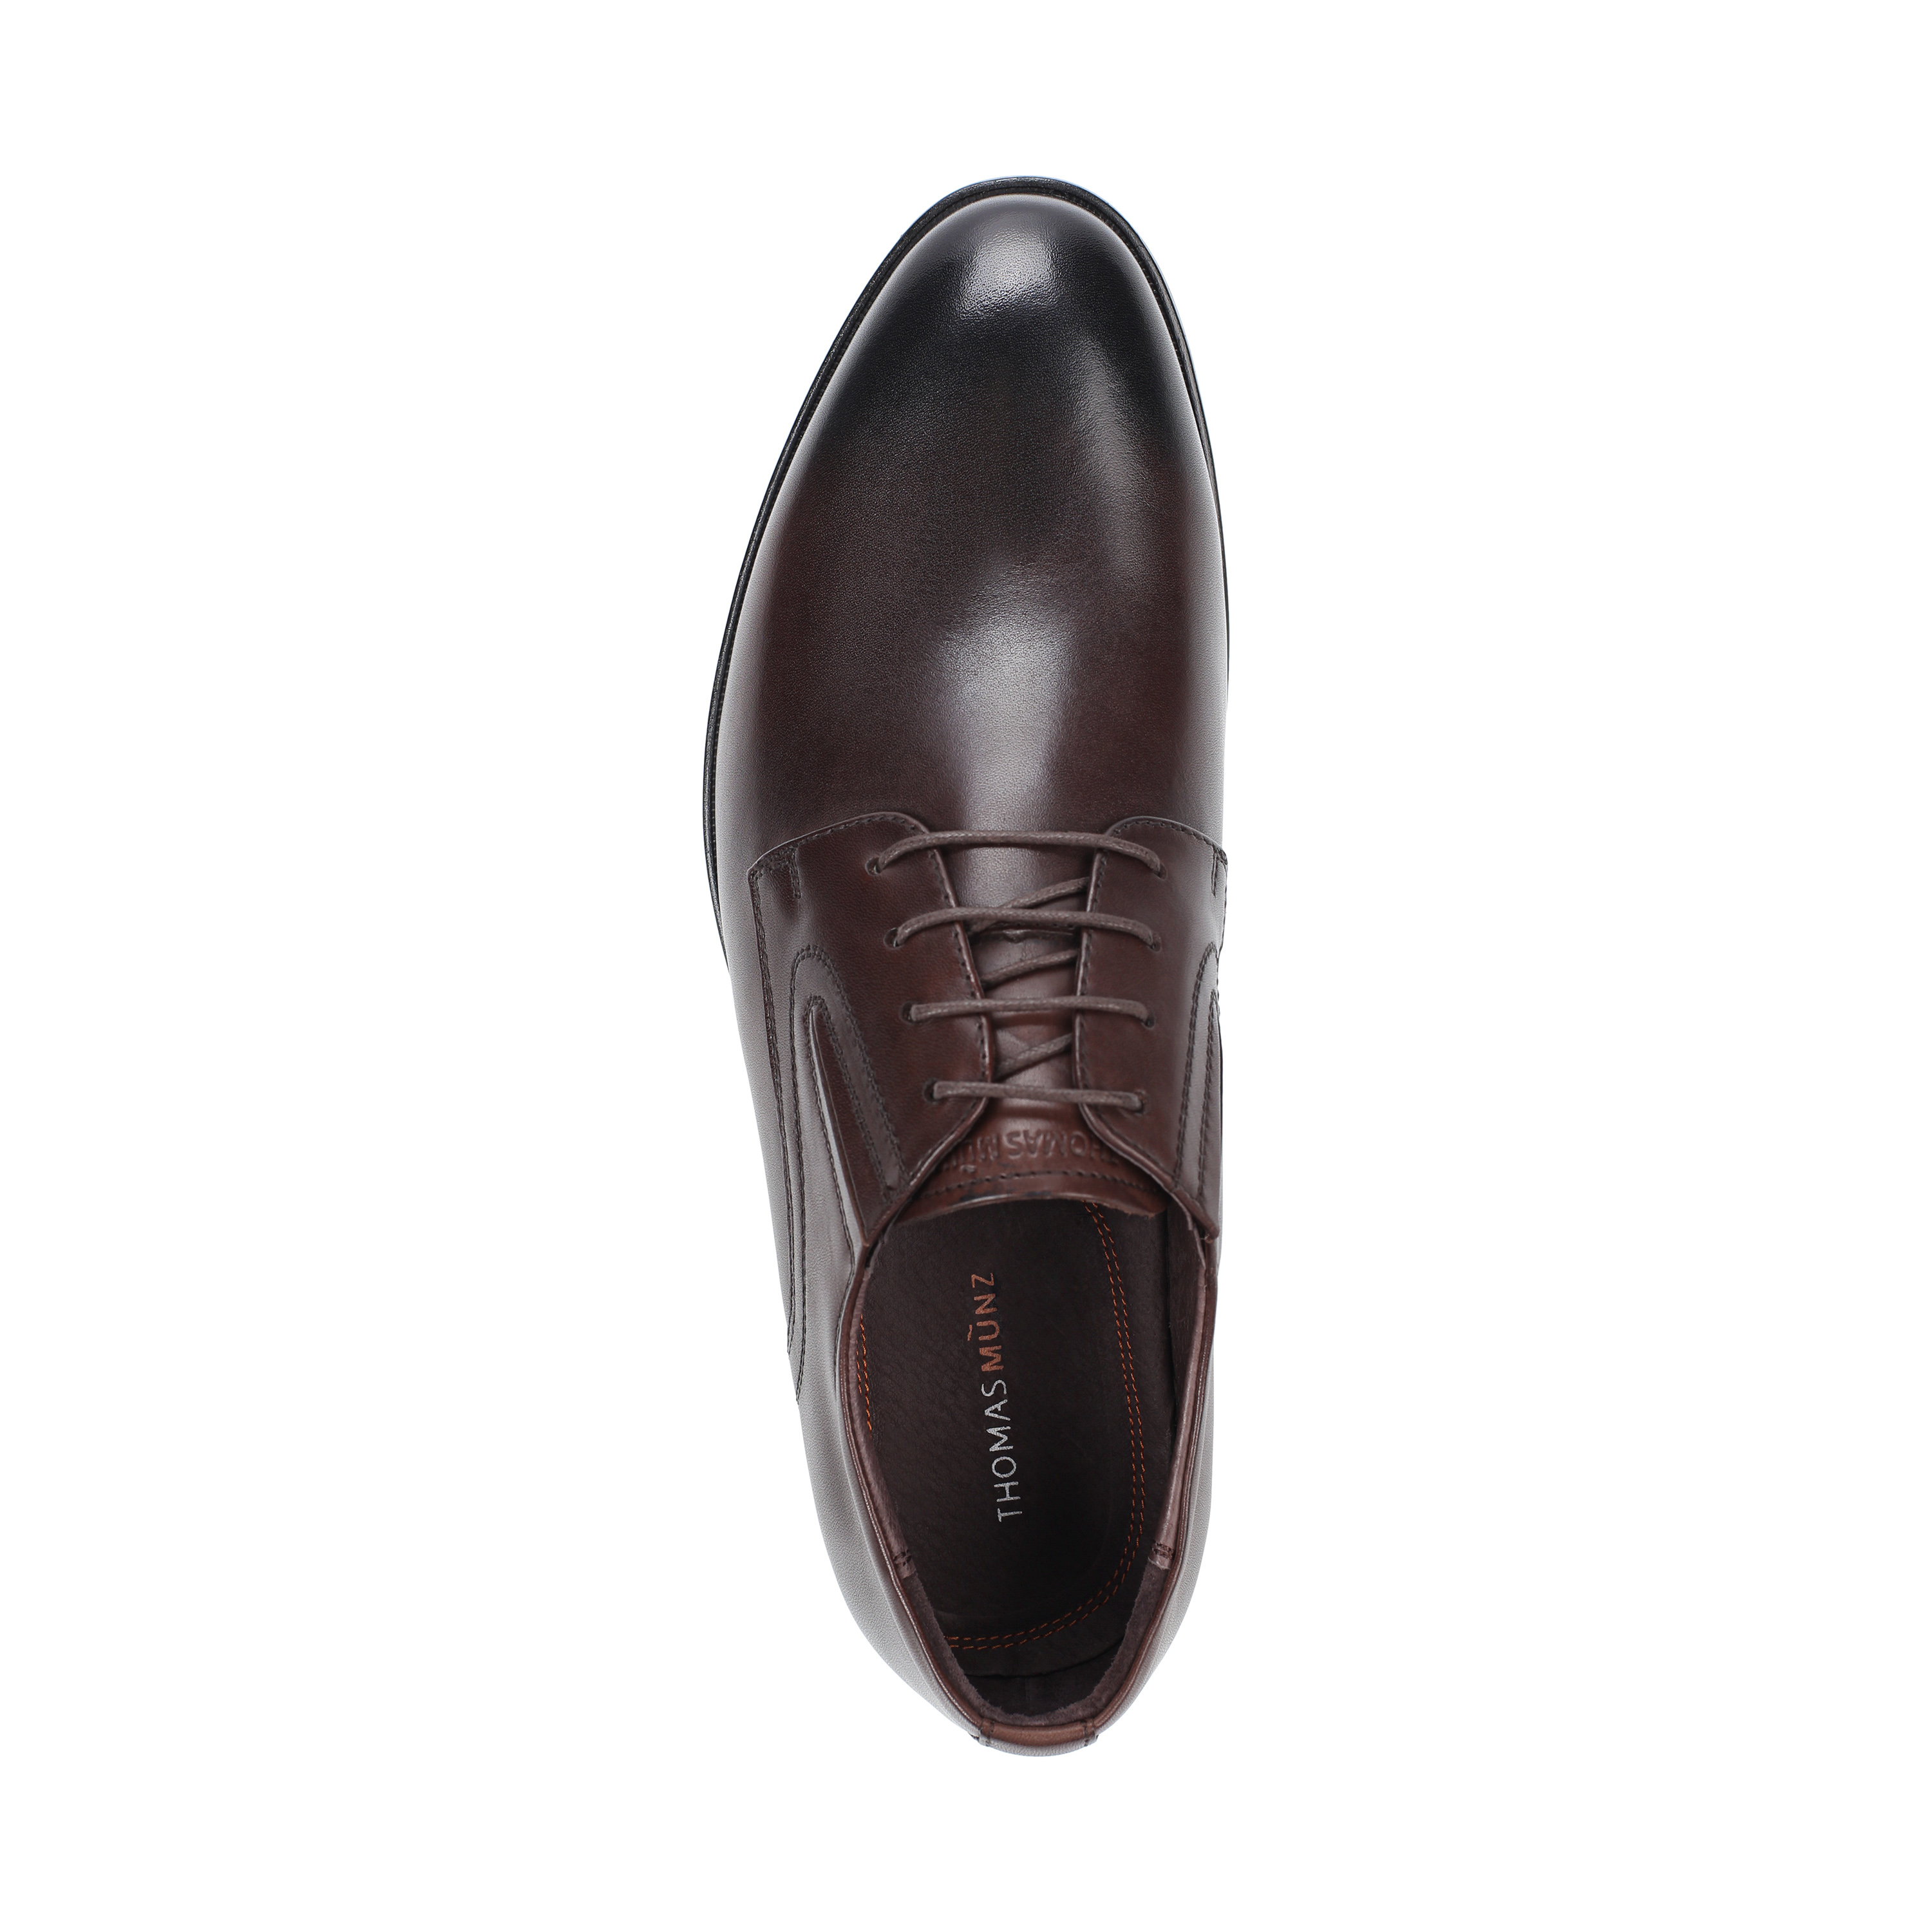 Туфли Thomas Munz 058-407A-1109 058-407A-1109, цвет коричневый, размер 44 полуботинки - фото 5